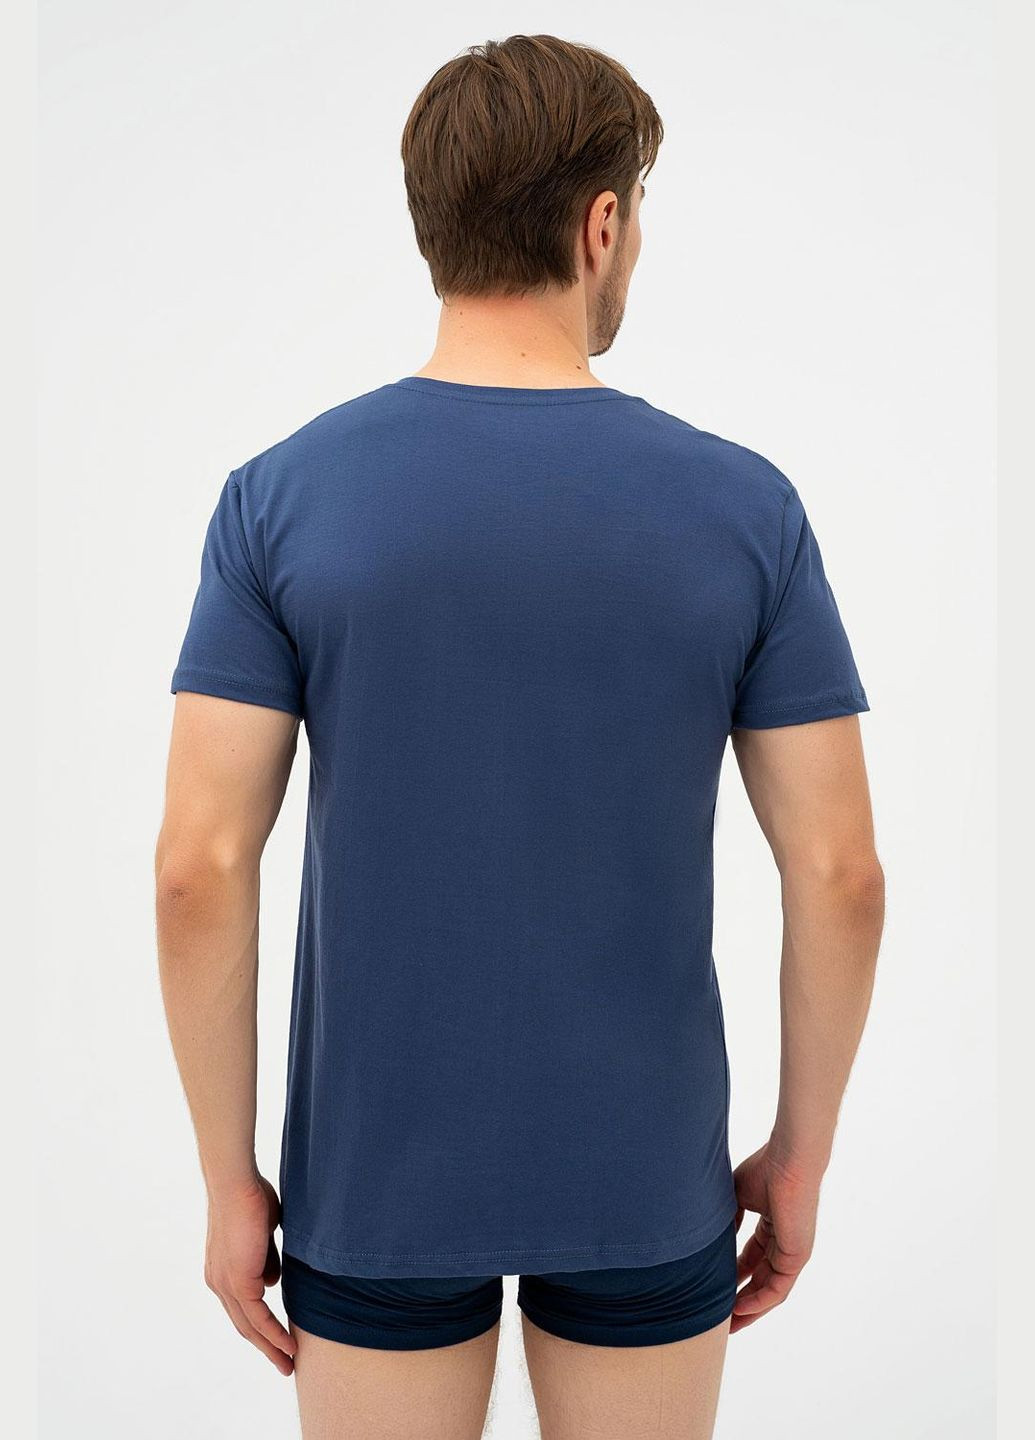 Синя футболка чоловіча 3xl джинсовий 202 new Cornette